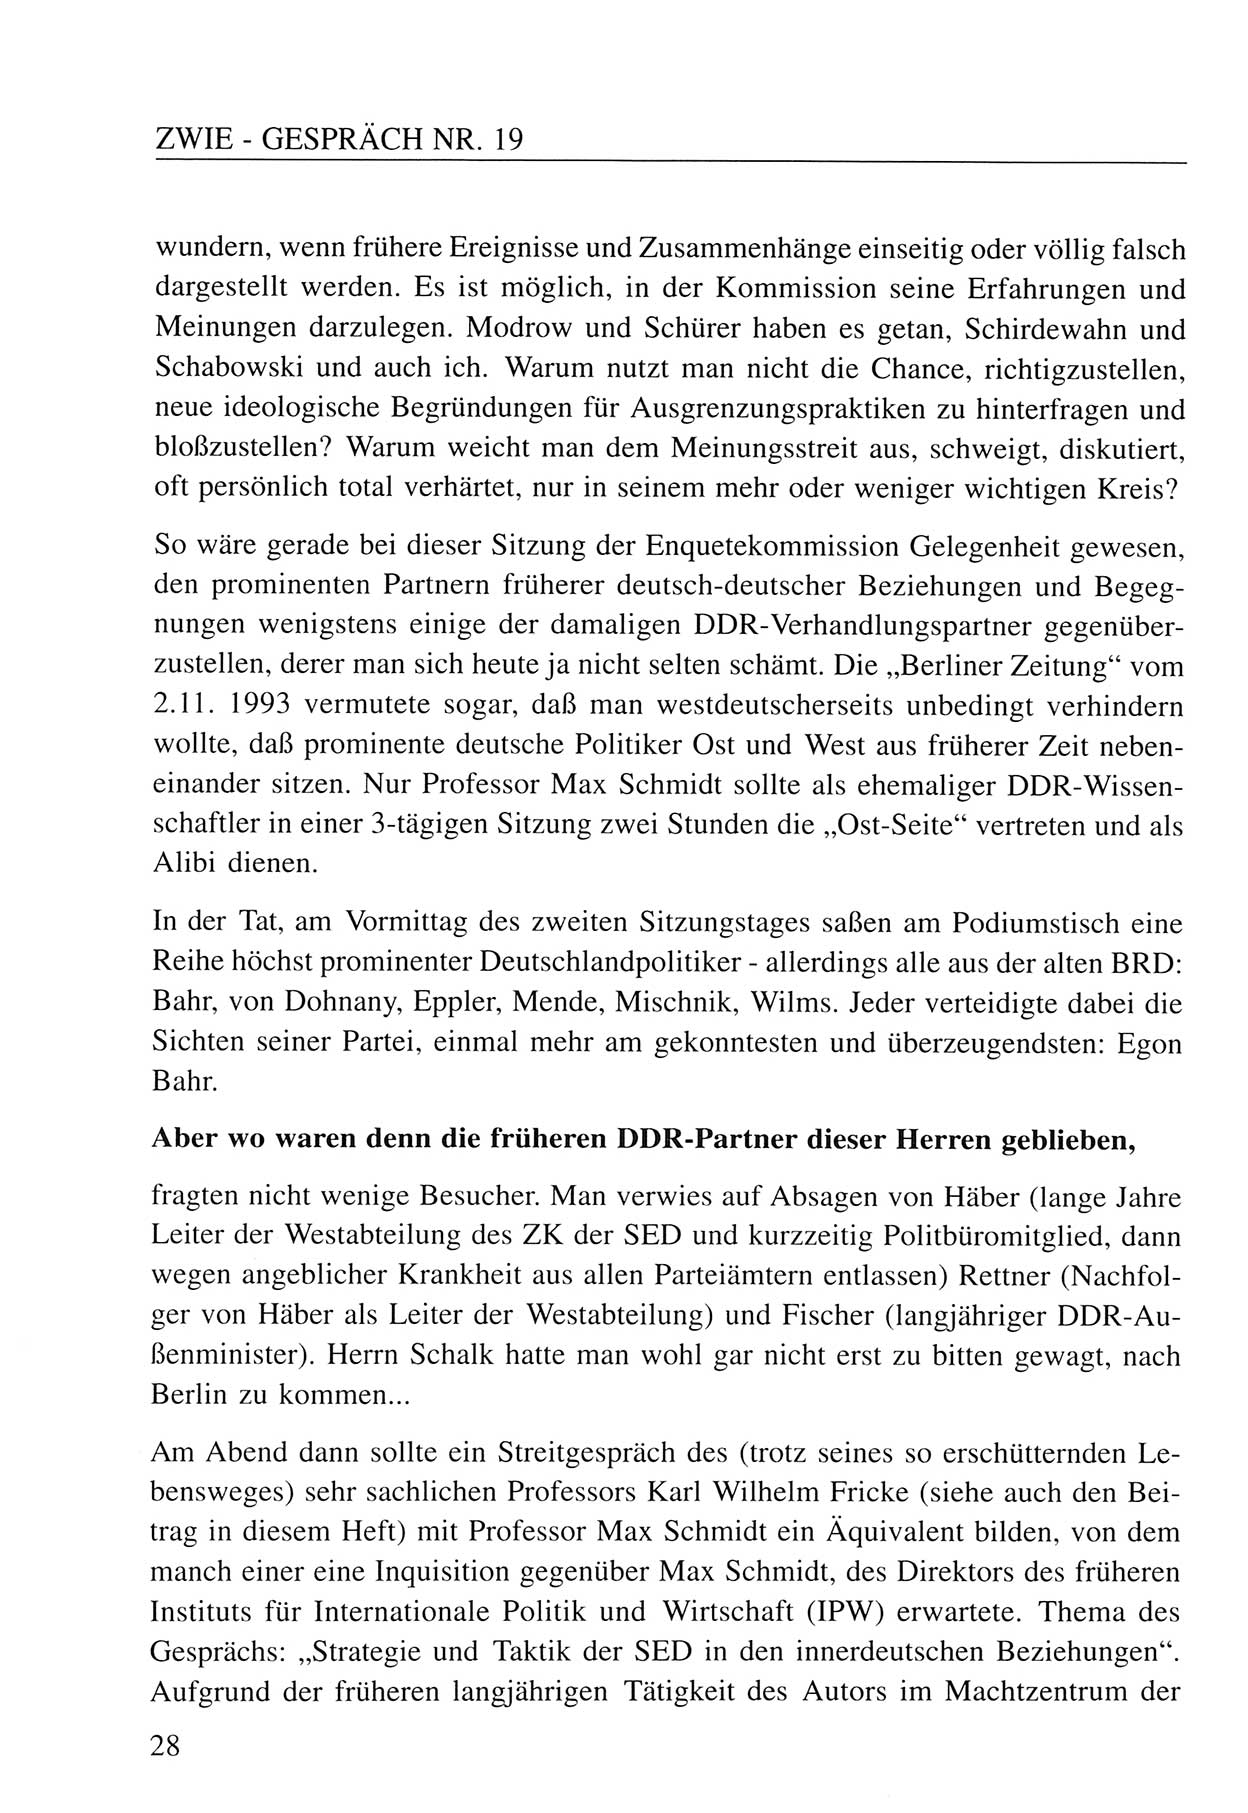 Zwie-Gespräch, Beiträge zum Umgang mit der Staatssicherheits-Vergangenheit [Deutsche Demokratische Republik (DDR)], Ausgabe Nr. 19, Berlin 1994, Seite 28 (Zwie-Gespr. Ausg. 19 1994, S. 28)